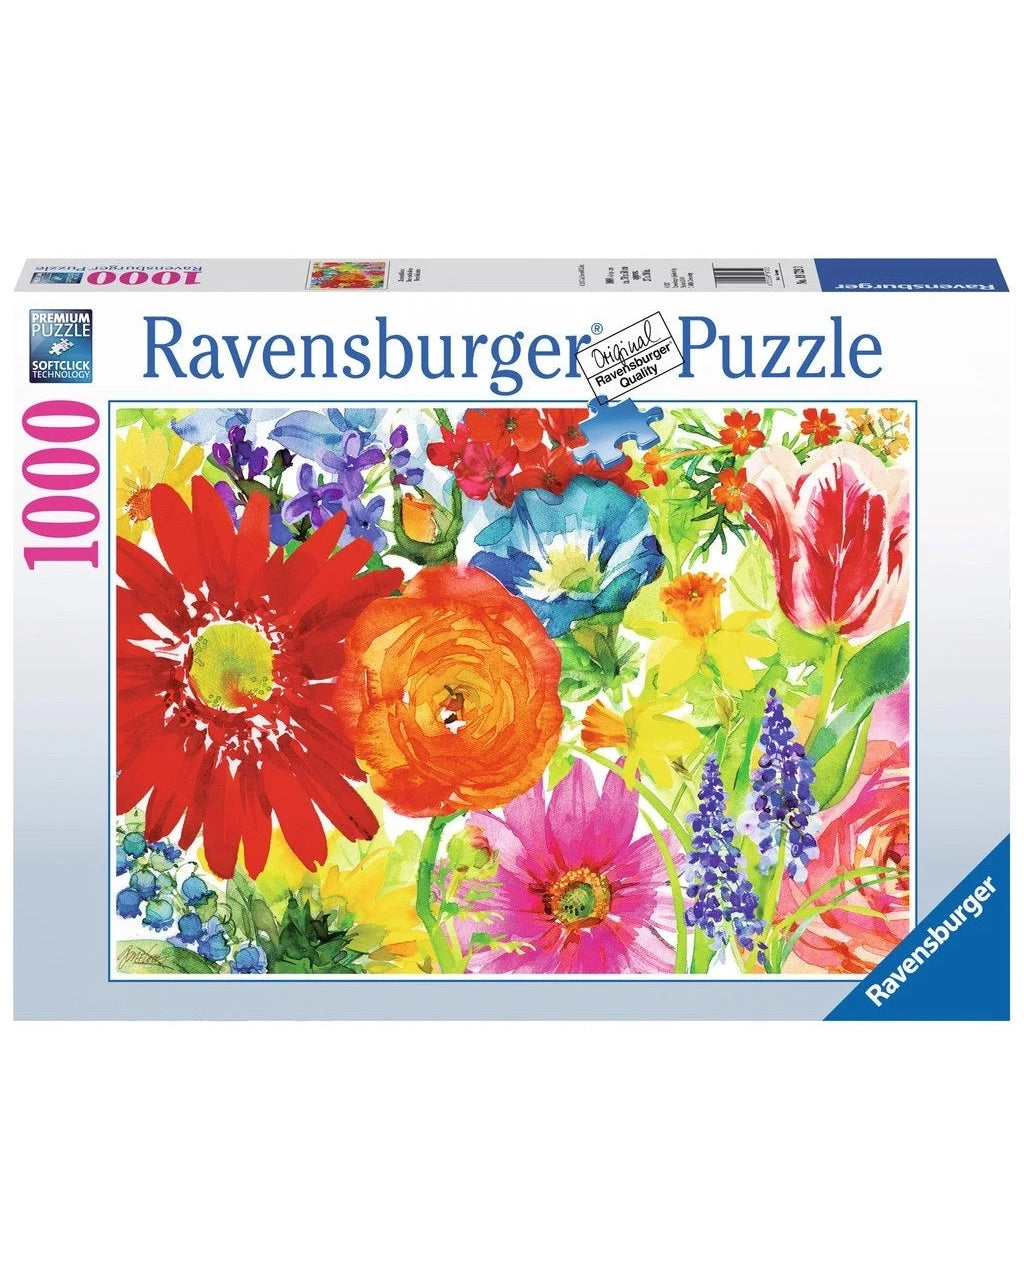 Ravensburger Puzzle - Abundant Blooms 1000pc Age 12+